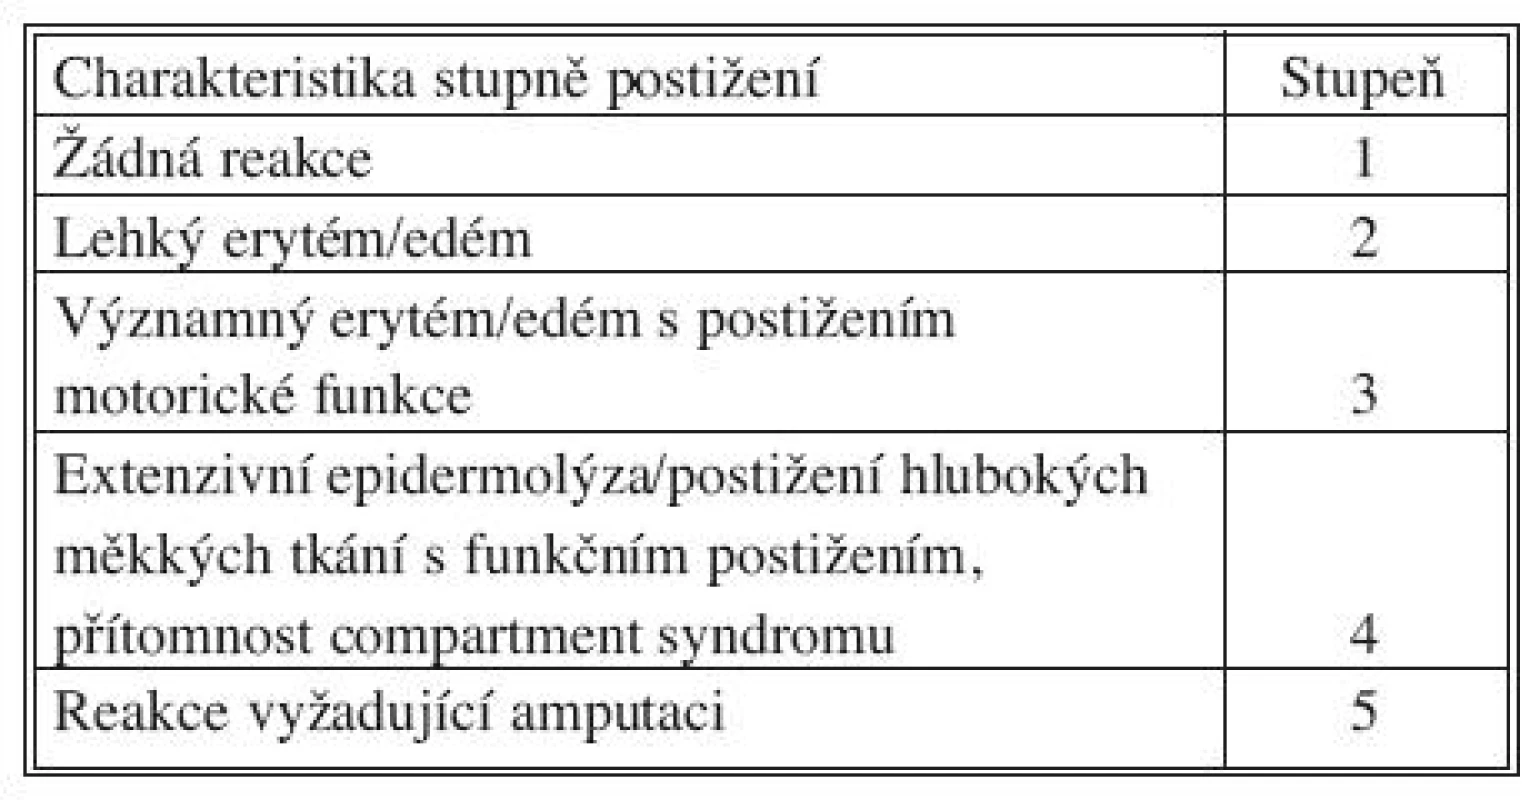 Wieberdinkova klasifikace akutní regionální toxicity
Tab. 2. Wieberdink classification of acute regional toxicity